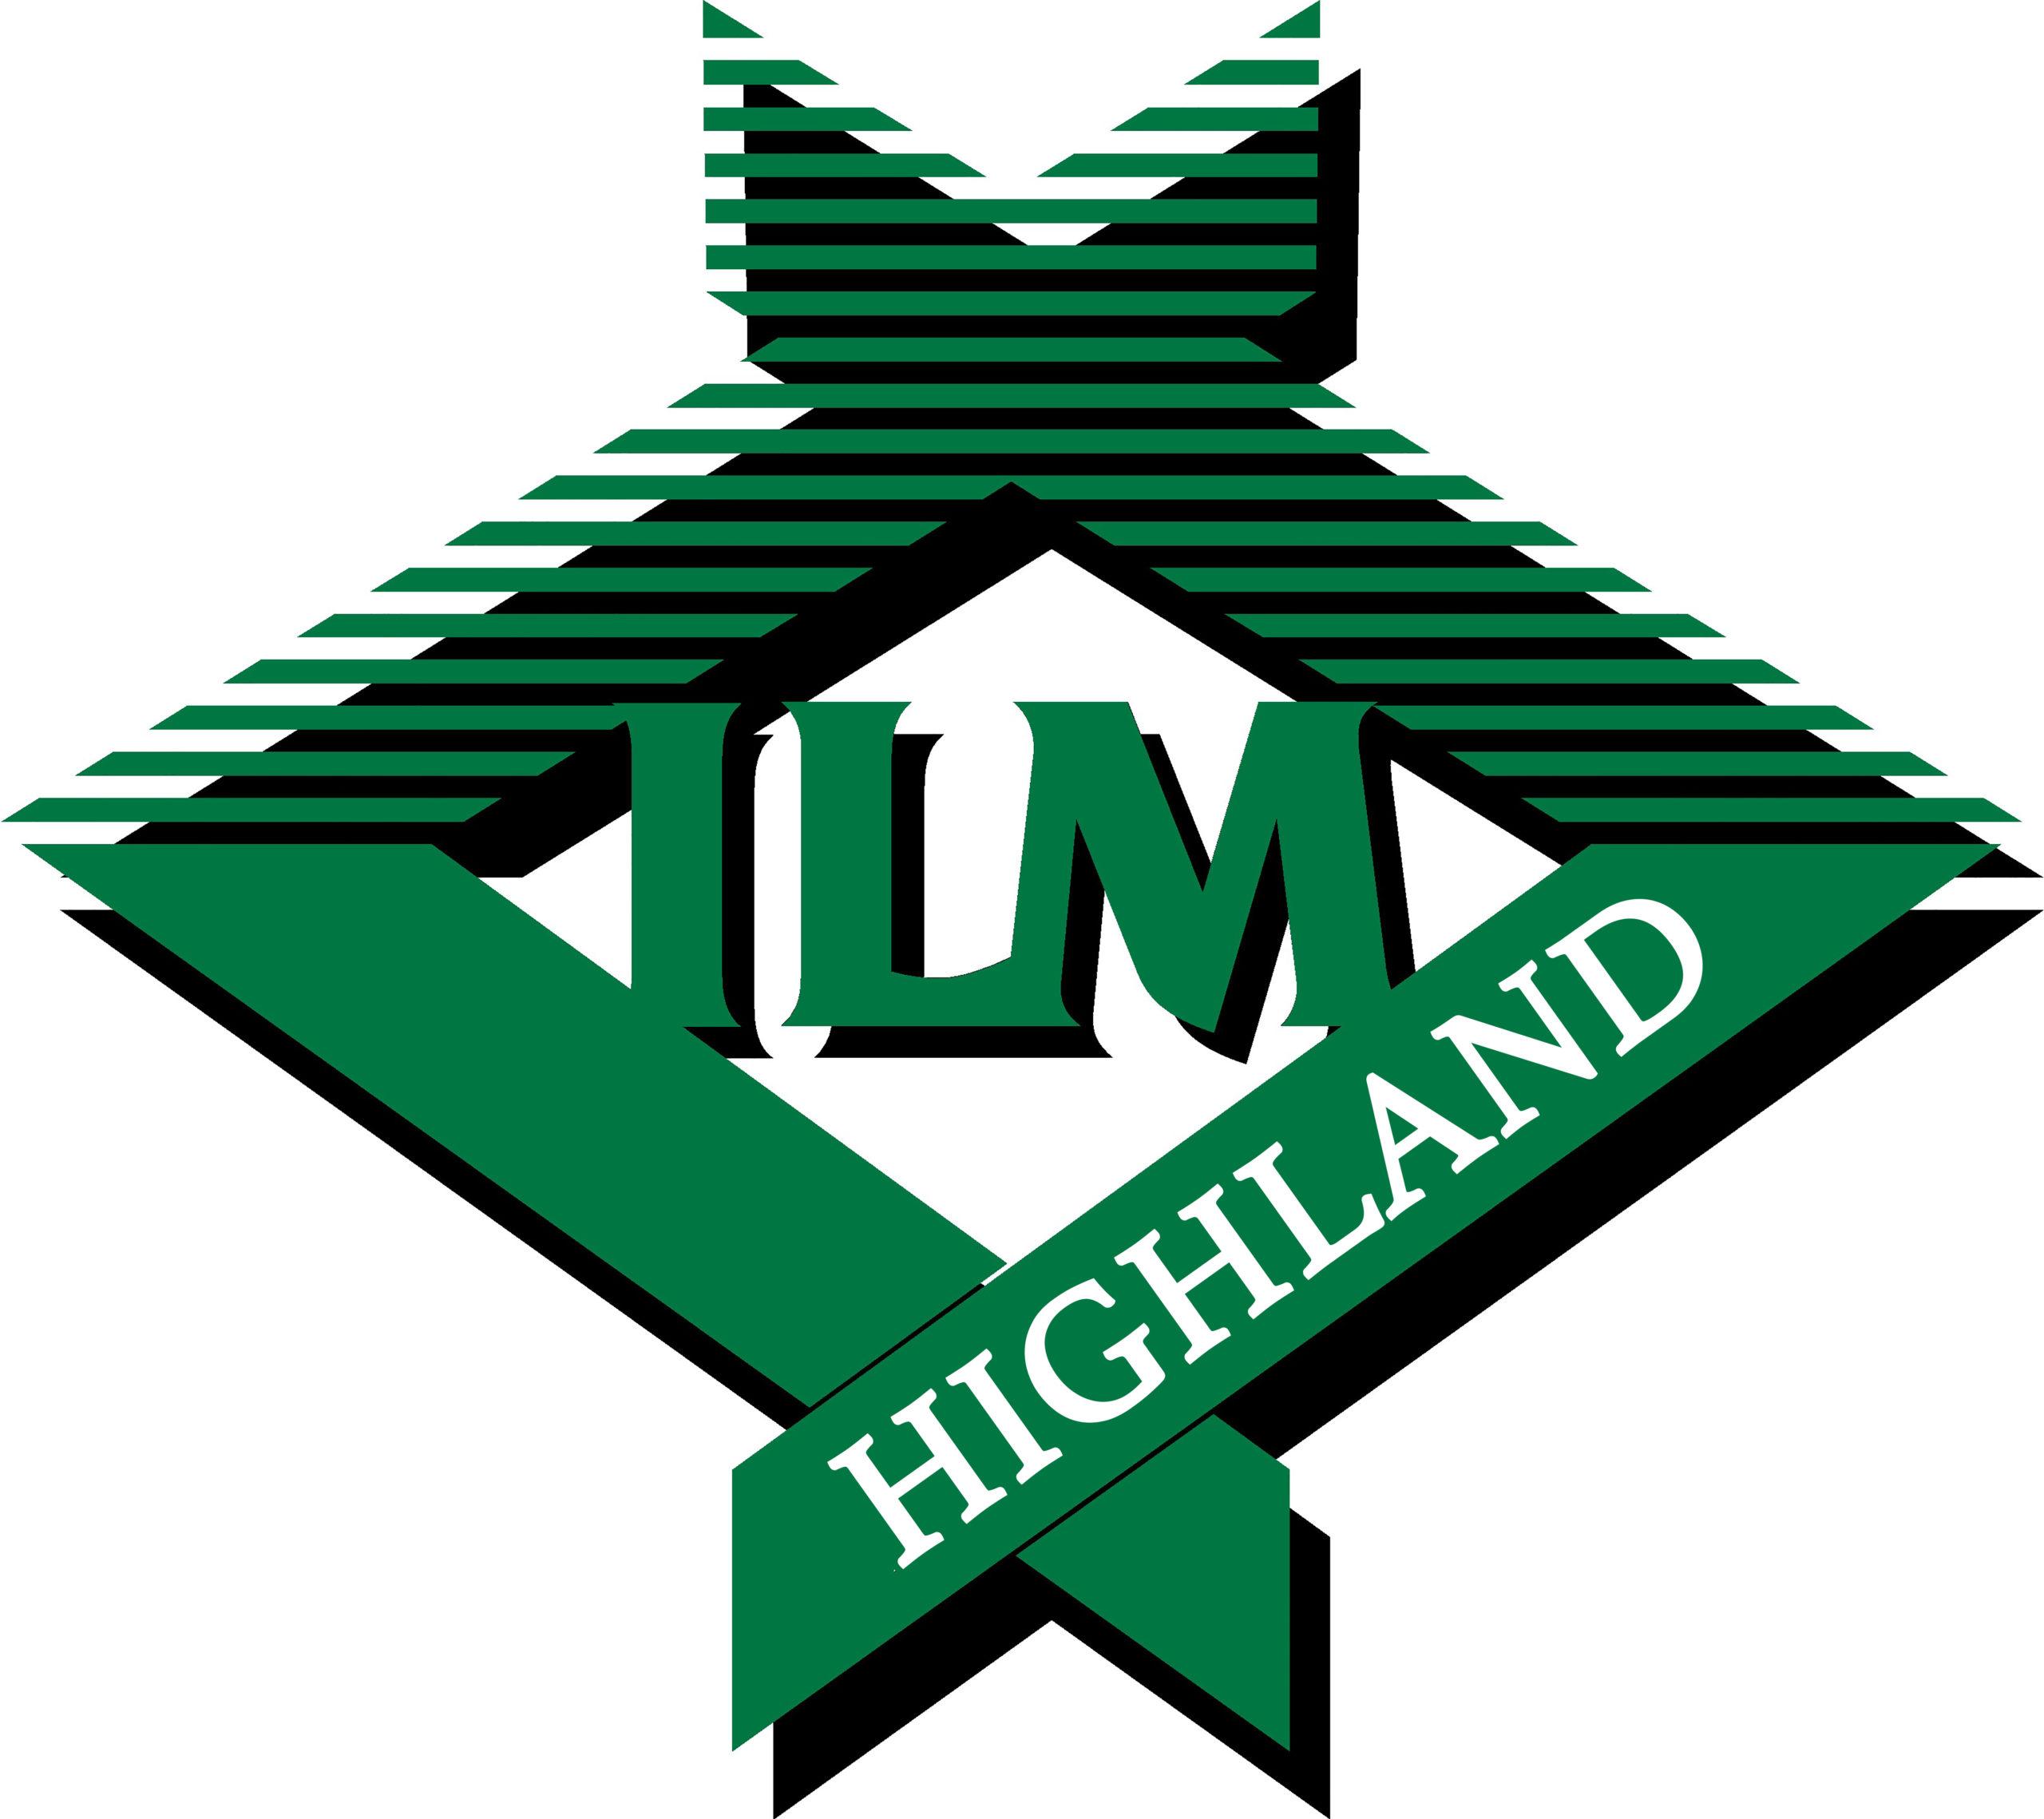 ILM-hi-res-logo.jpg